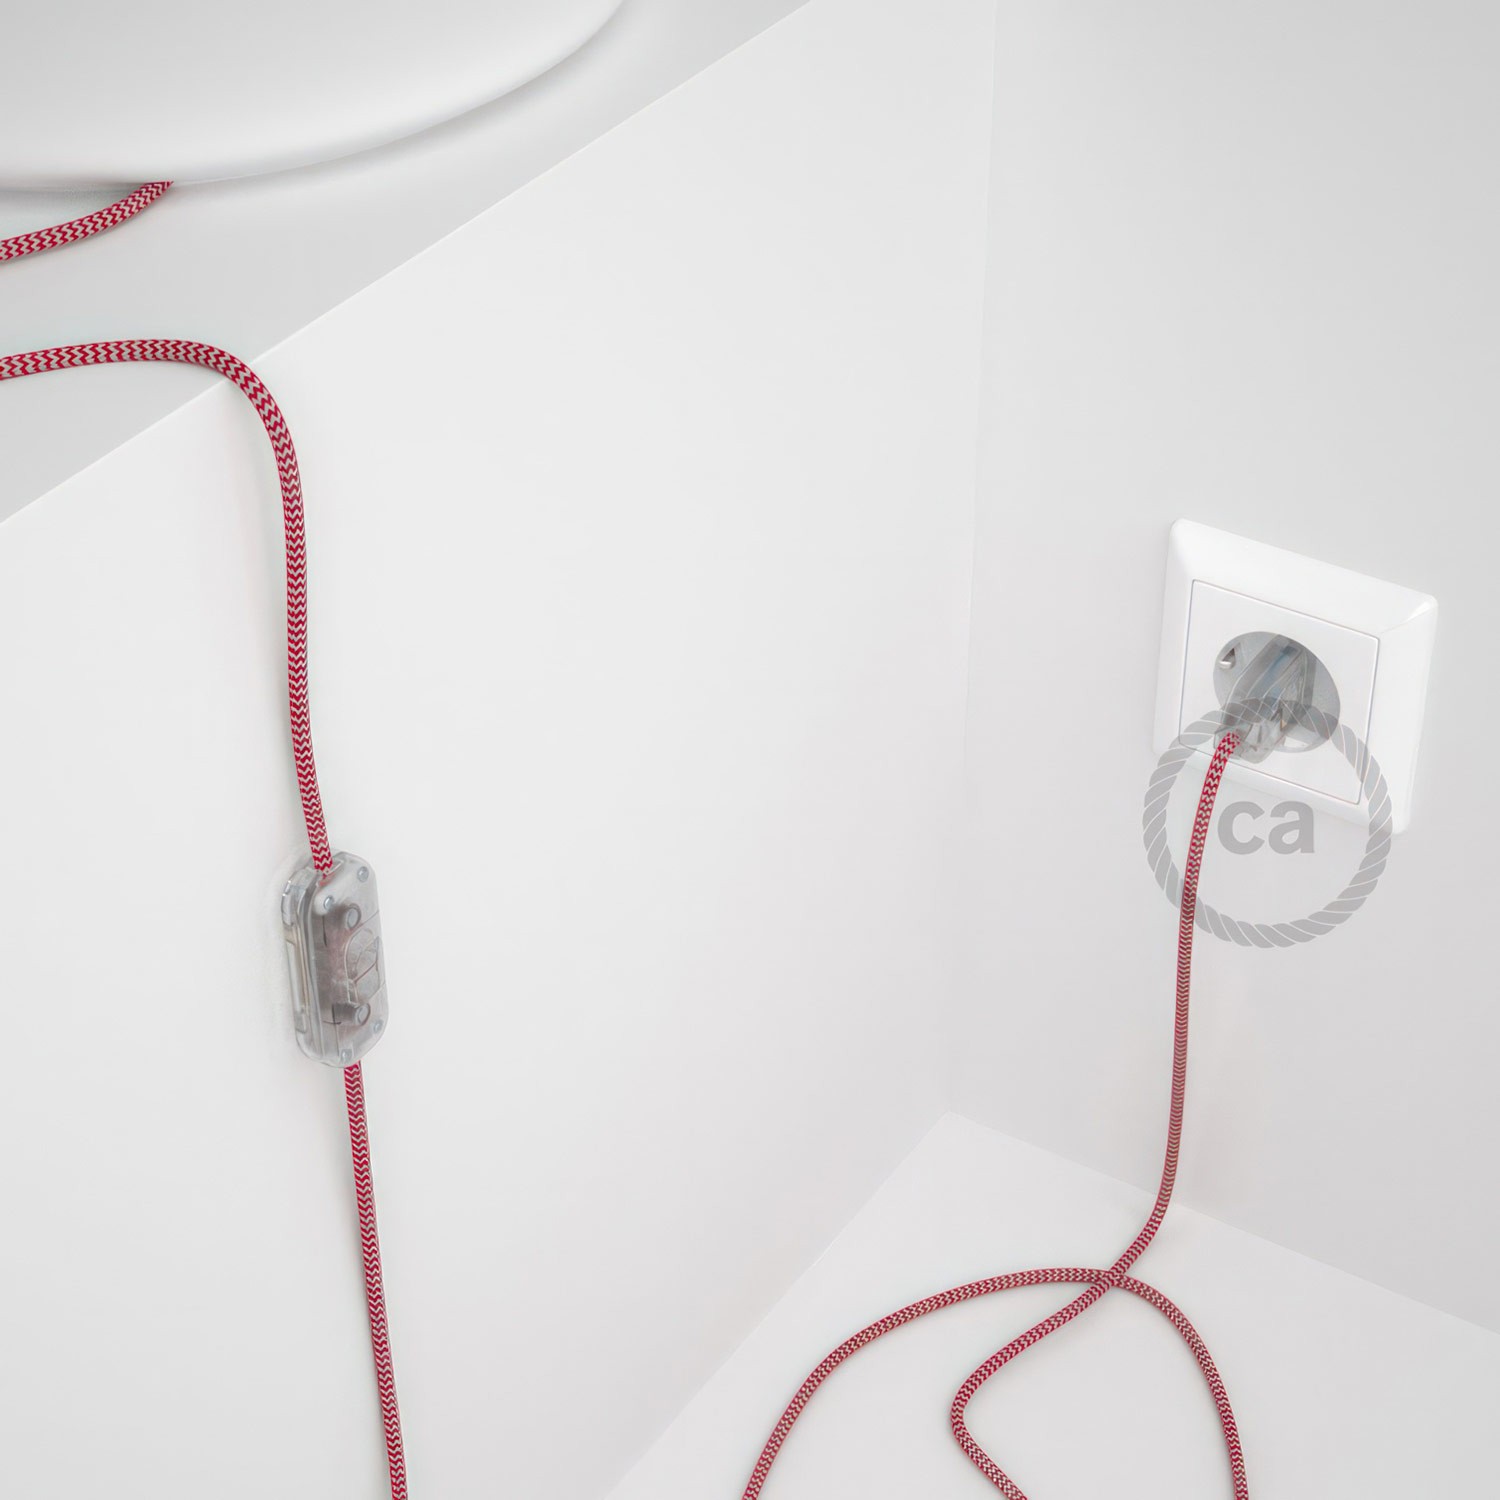 Cableado para lámpara, cable RZ09 Efecto Seda ZigZag Blanco Rojo 1,8m. Elige tu el color de la clavija y del interruptor!